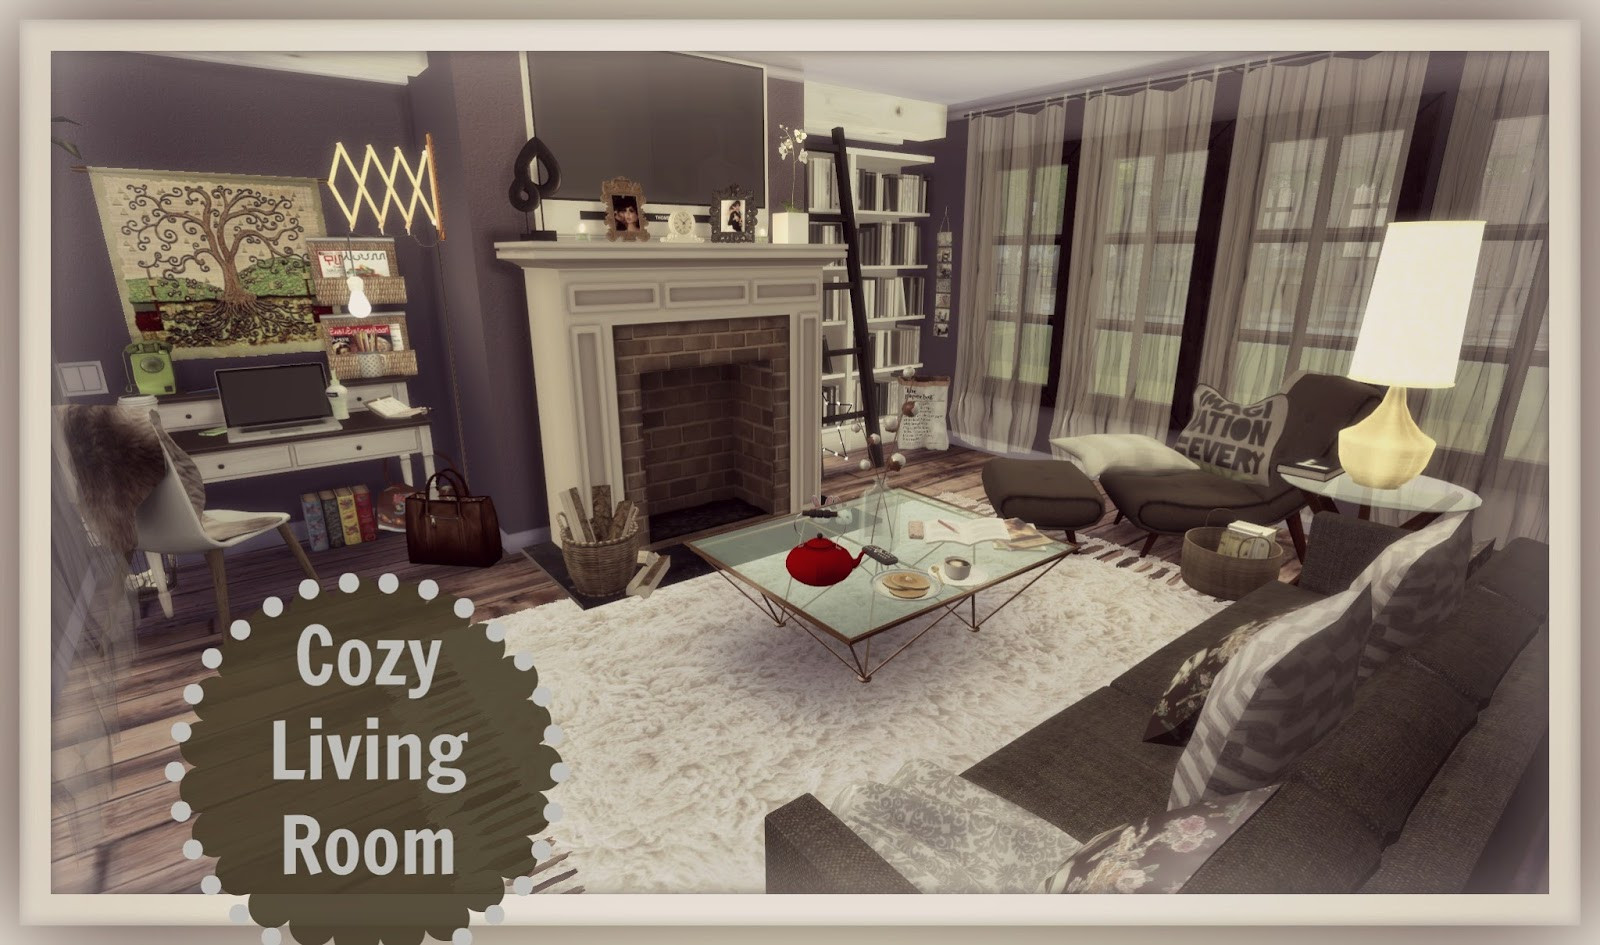 Sims 4 Living Room Ideas
 Sims 4 Cozy Living Room Dinha